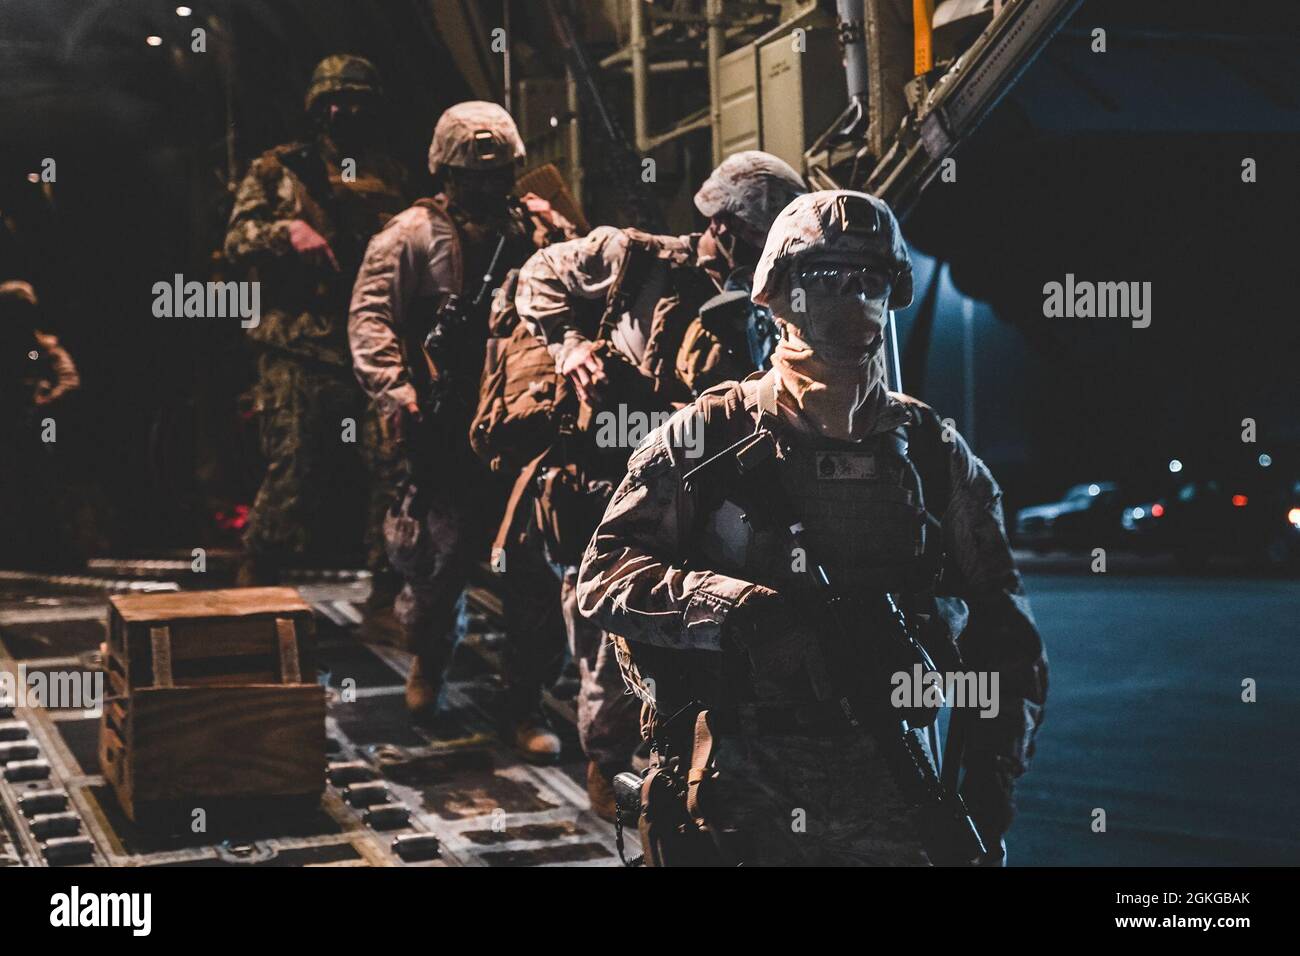 Marines USA con Fleet Anti-Terrorism Security Company, Europa (FASTEUR), marinai della Marina degli Stati Uniti con Explosive Ordnance Disposal Mobile Unit 8 (EODMU 8), E le forze navali di costruzione, i "Seabees", Comandante, Task Force - 68 (CTF-68) personale sbarcare una US Air Force C-130 a Niamey, Niger, 15 aprile 2021 per un esercizio di preparazione delle forze congiunte in Mali, Africa. Le forze degli Stati Uniti svolgono regolarmente esercizi di valutazione operativa e logistica in tutte le regioni per prepararsi alle contingenze, per esercitare la prontezza e identificare le aree di miglioramento. Foto Stock